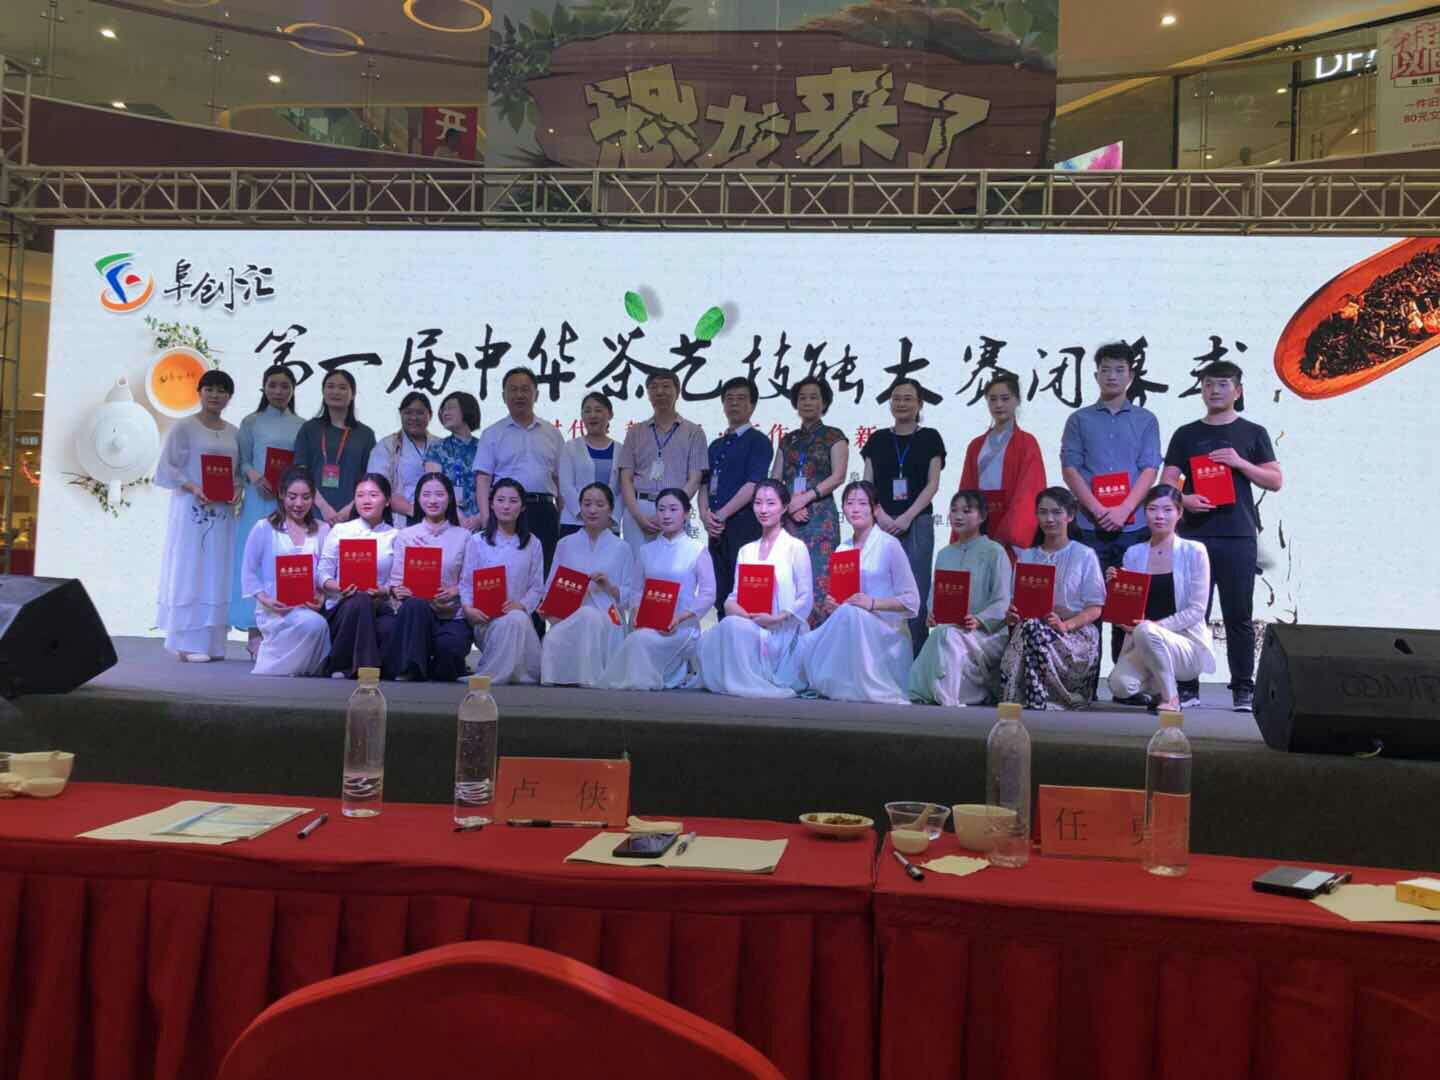 丁以寿会长应邀出席并致辞阜阳市第一届中华茶艺技能大赛